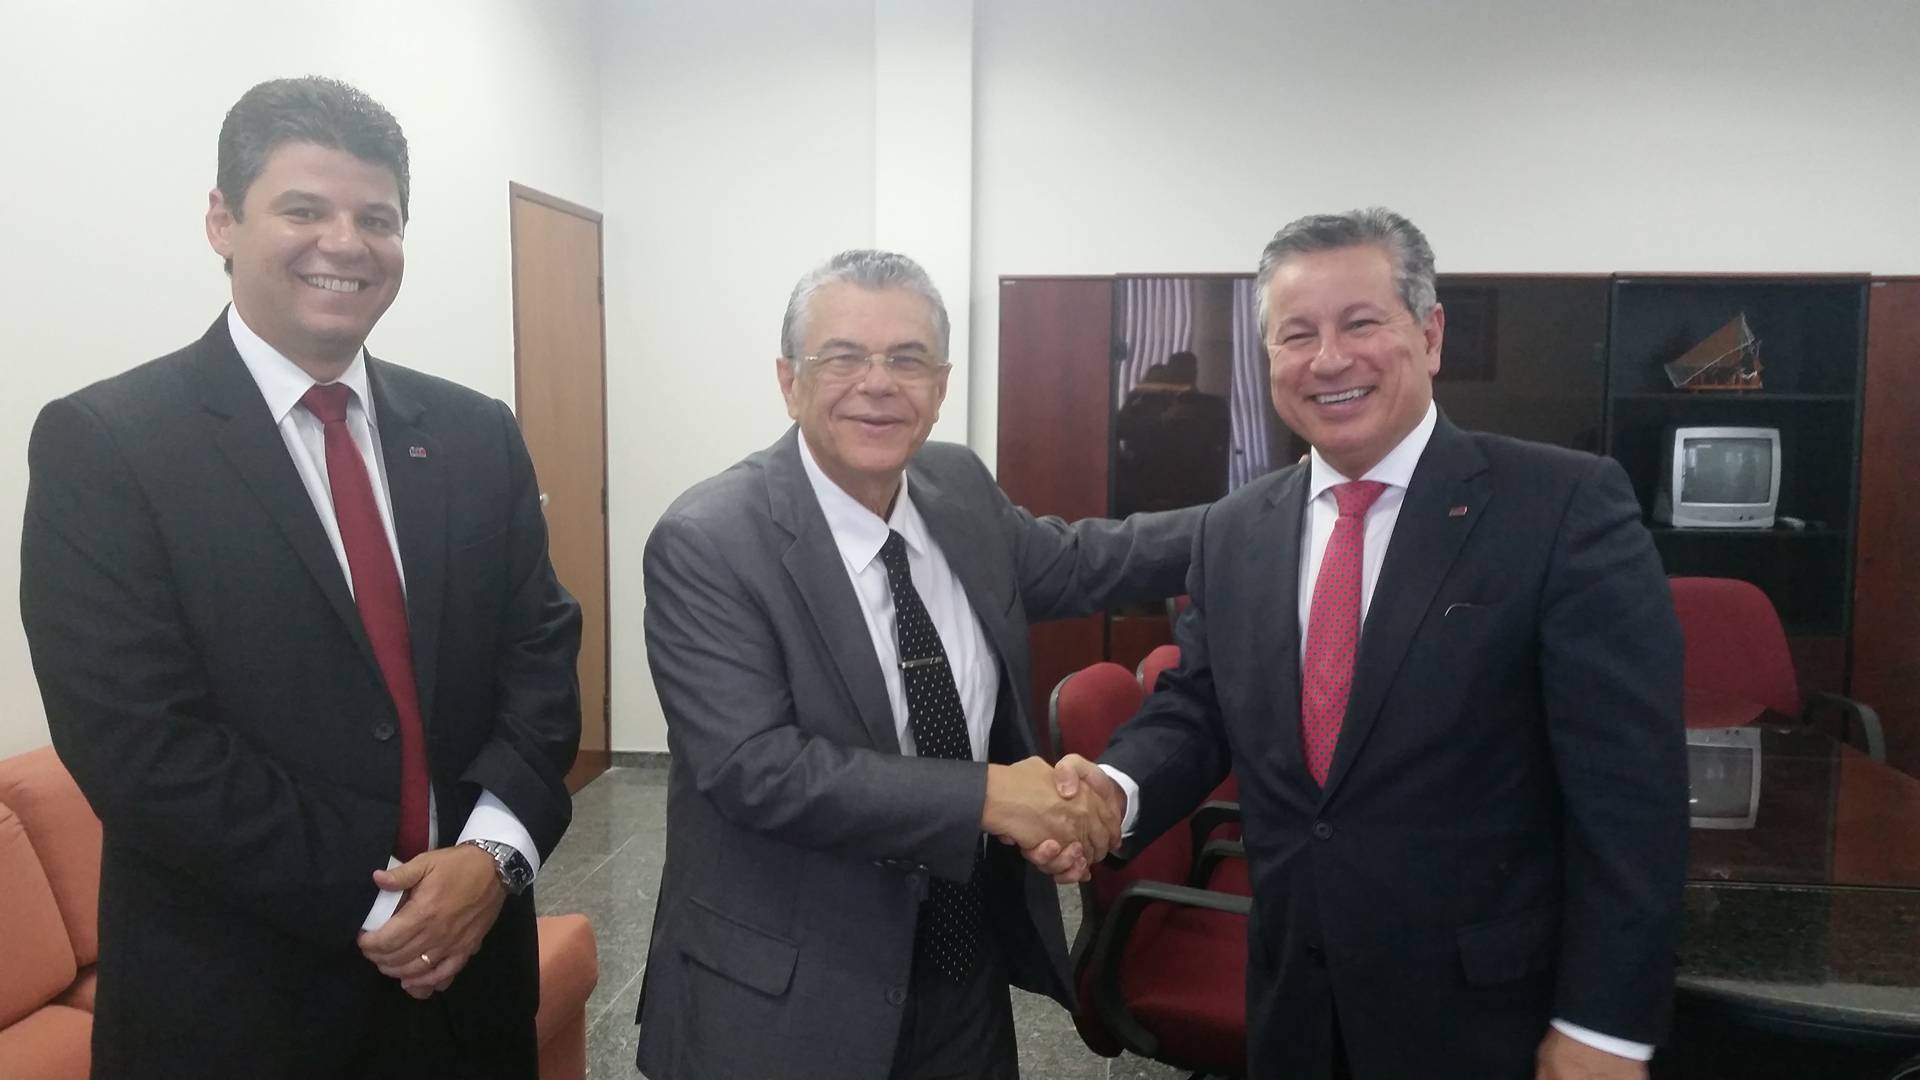 OAB/SE conquista nova sala dos advogados na Justiça Federal - OAB/SE -  Ordem dos Advogados do Brasil